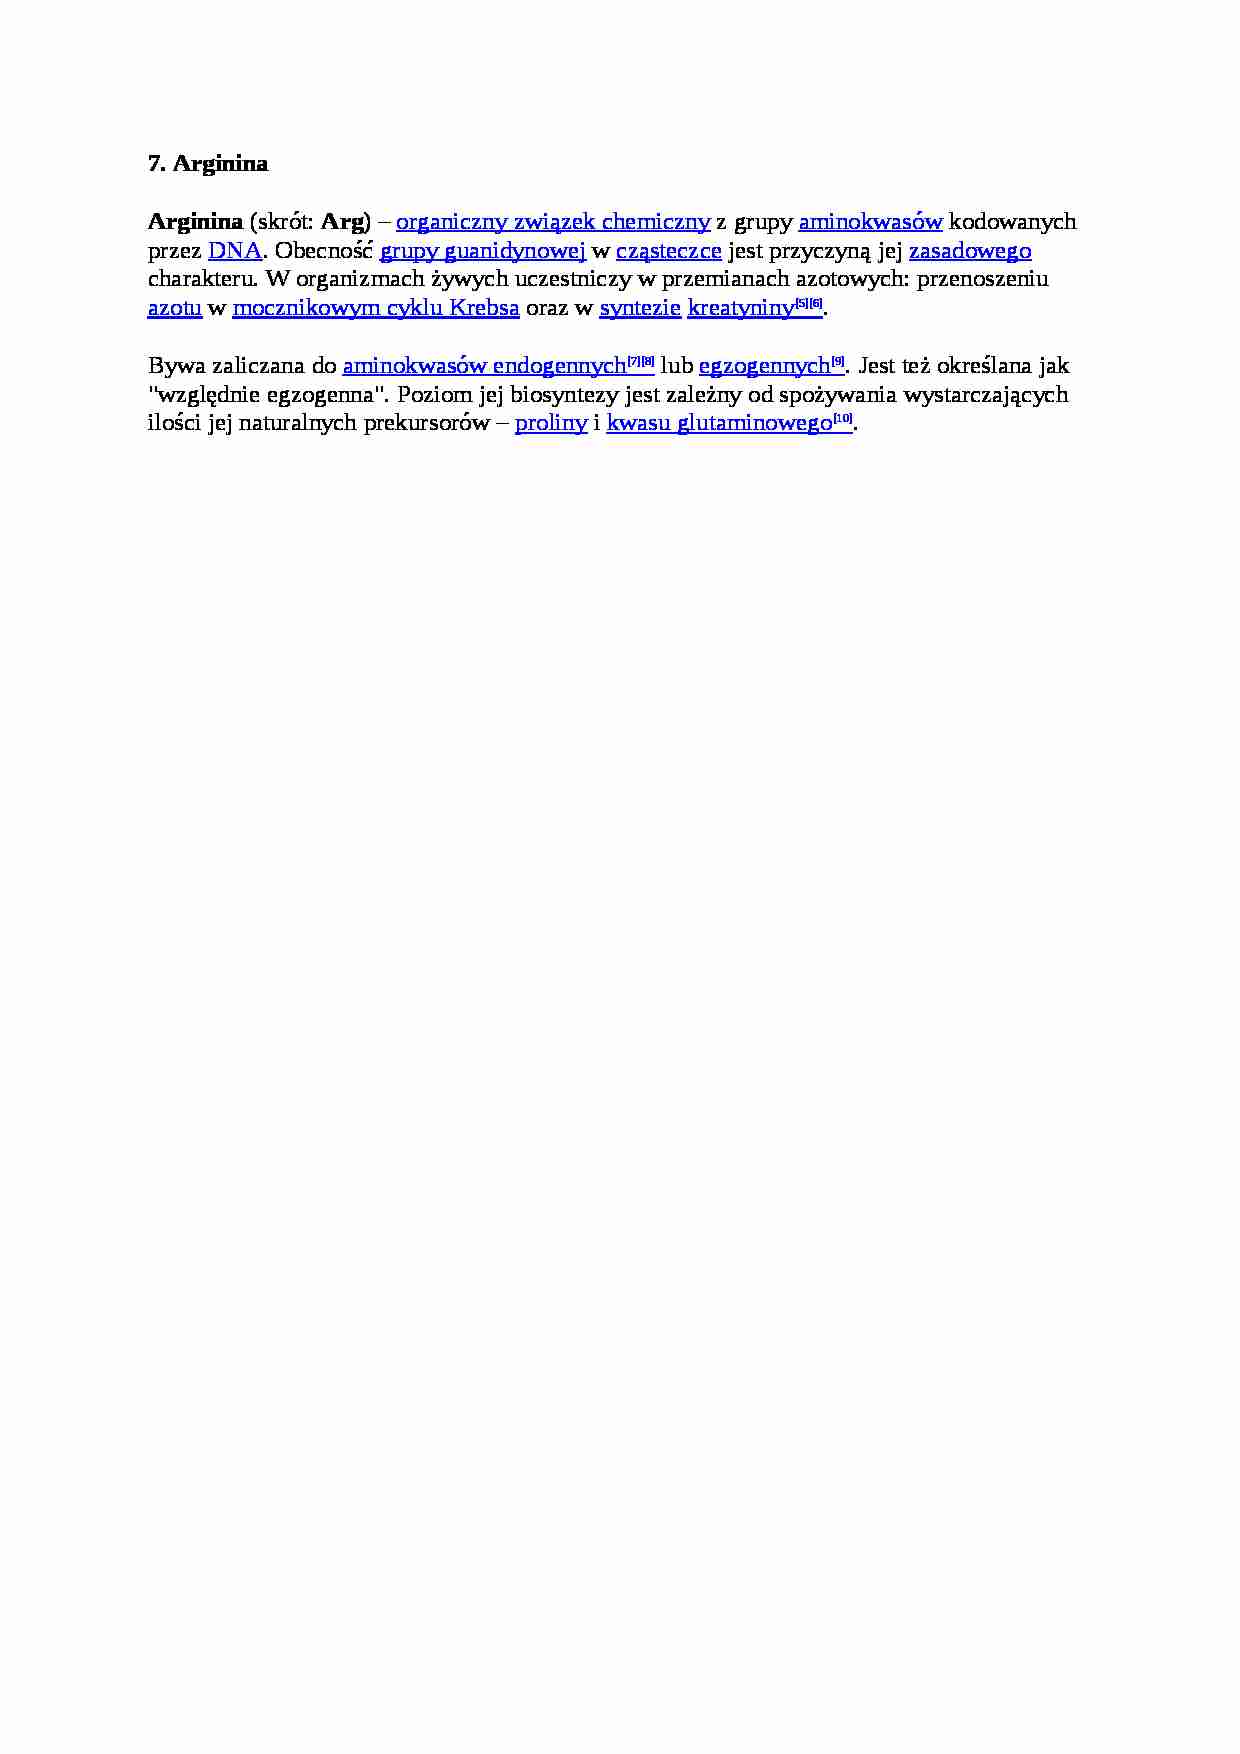 Beta-hydroksy-metylomaślan  Arginina - strona 1